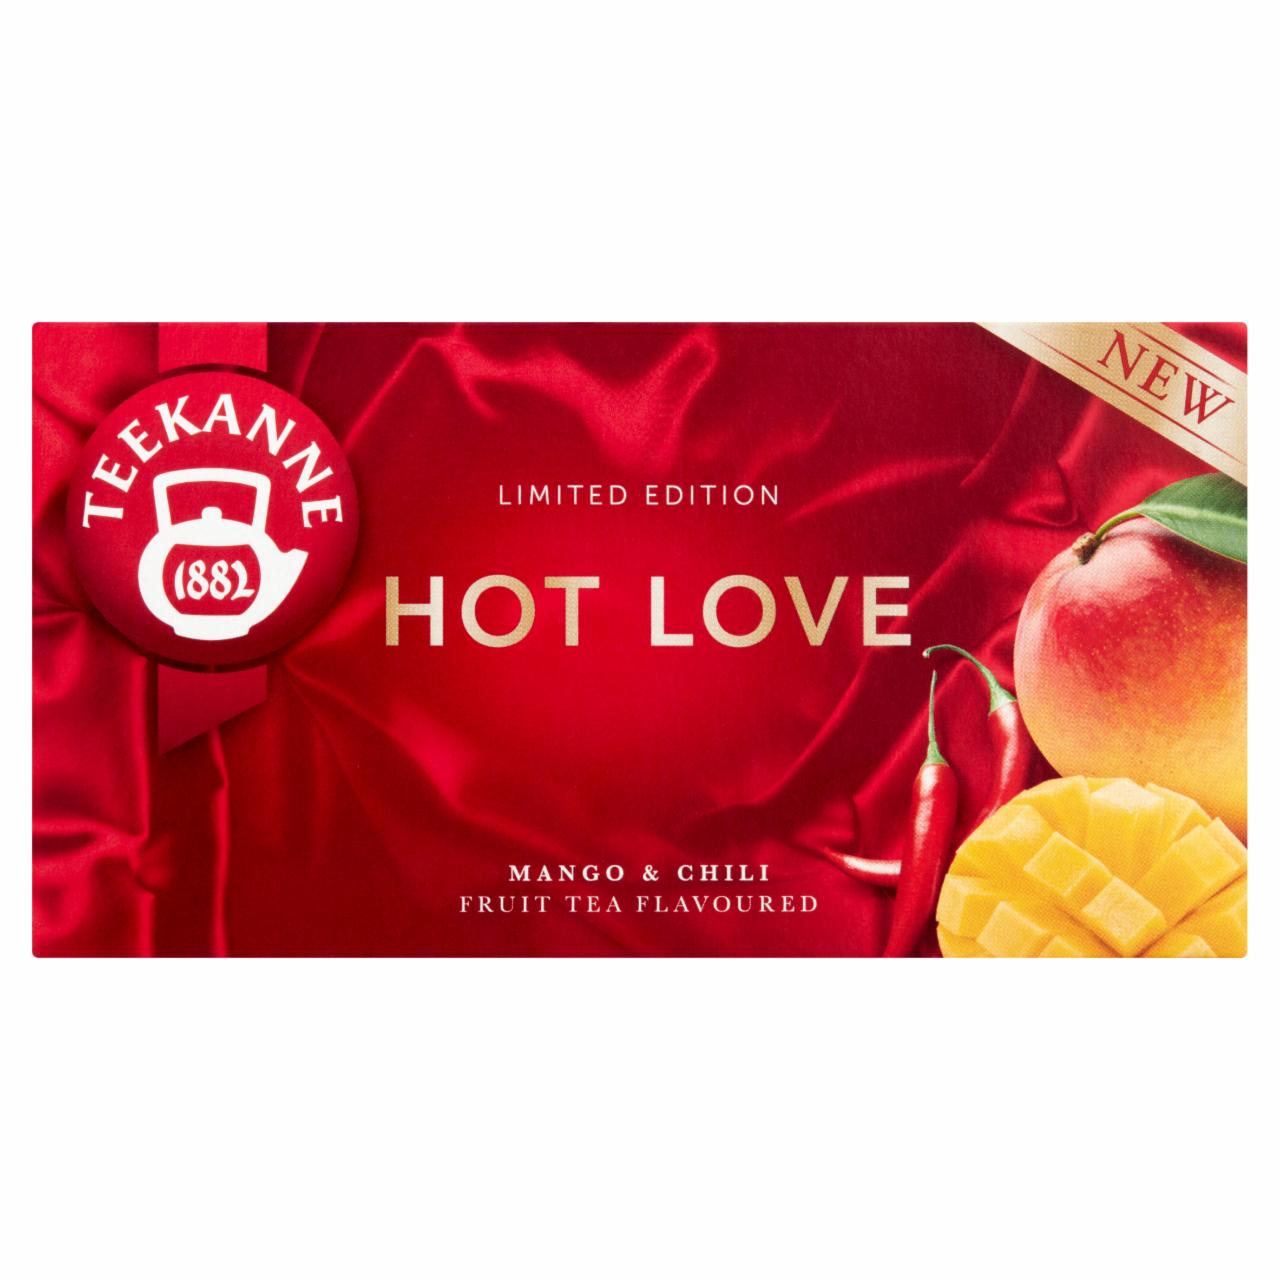 Képek - Teekanne Hot Love mangó és chili ízesítésű gyümölcstea keverék 20 filter 40 g